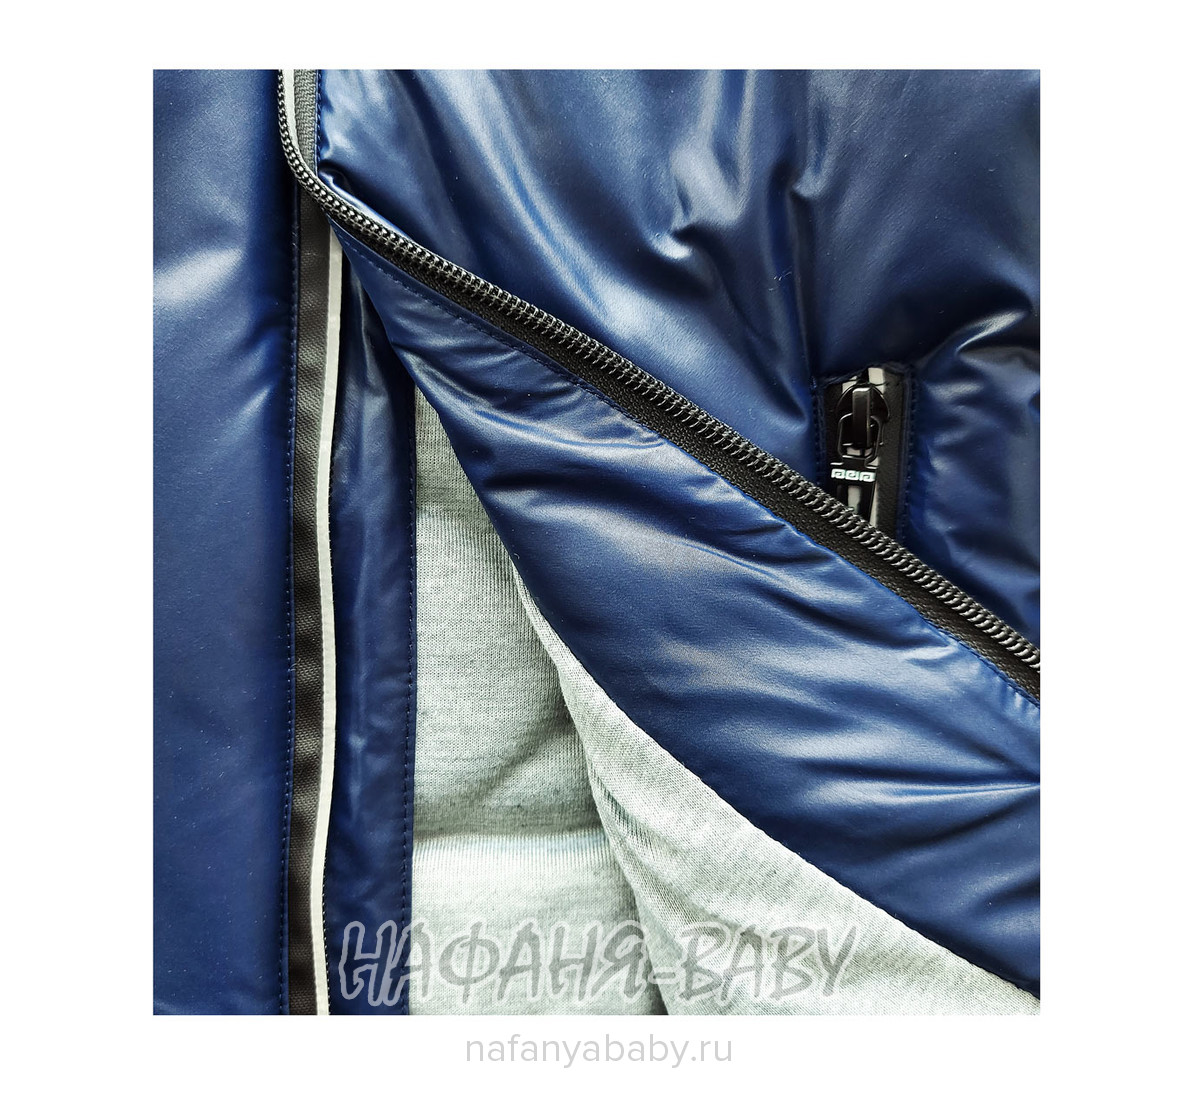 Детская демисезонная куртка DELFIN-FREE, купить в интернет магазине Нафаня. арт: 2158.